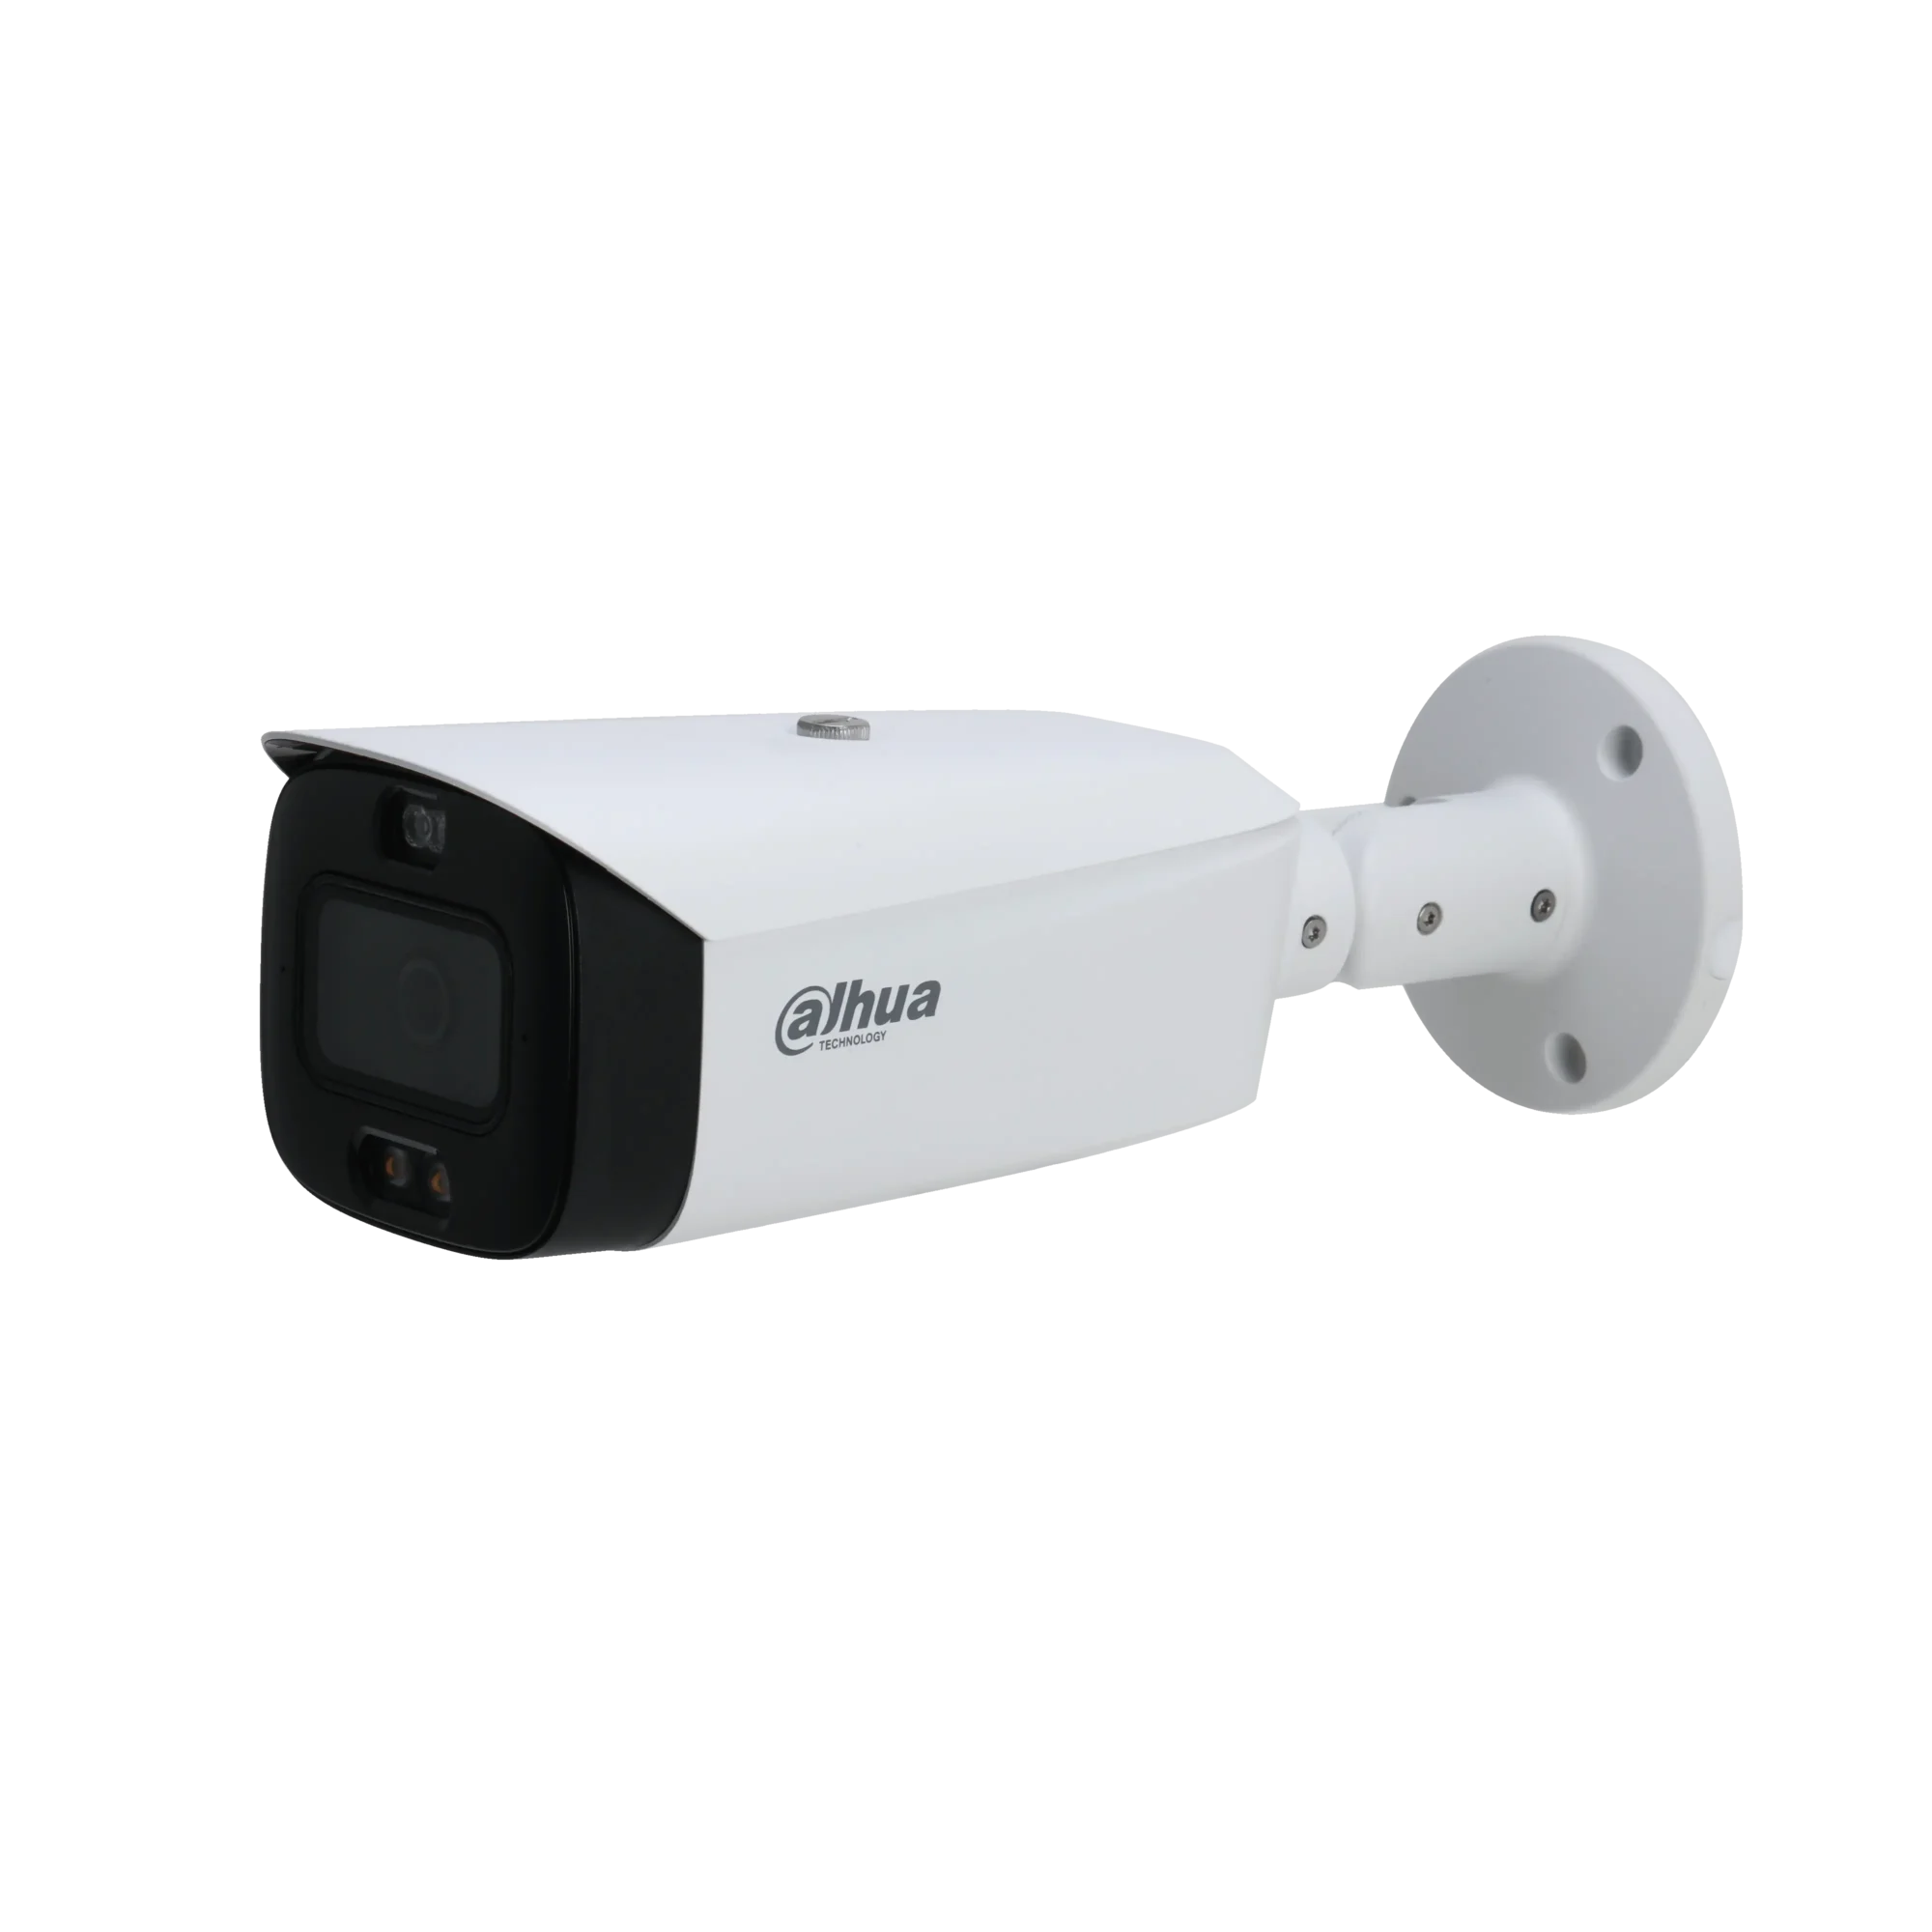 Dahua 2.8mm TiOC 2 bullet camera - DH-IPC-HFW3549T1-AS-PV